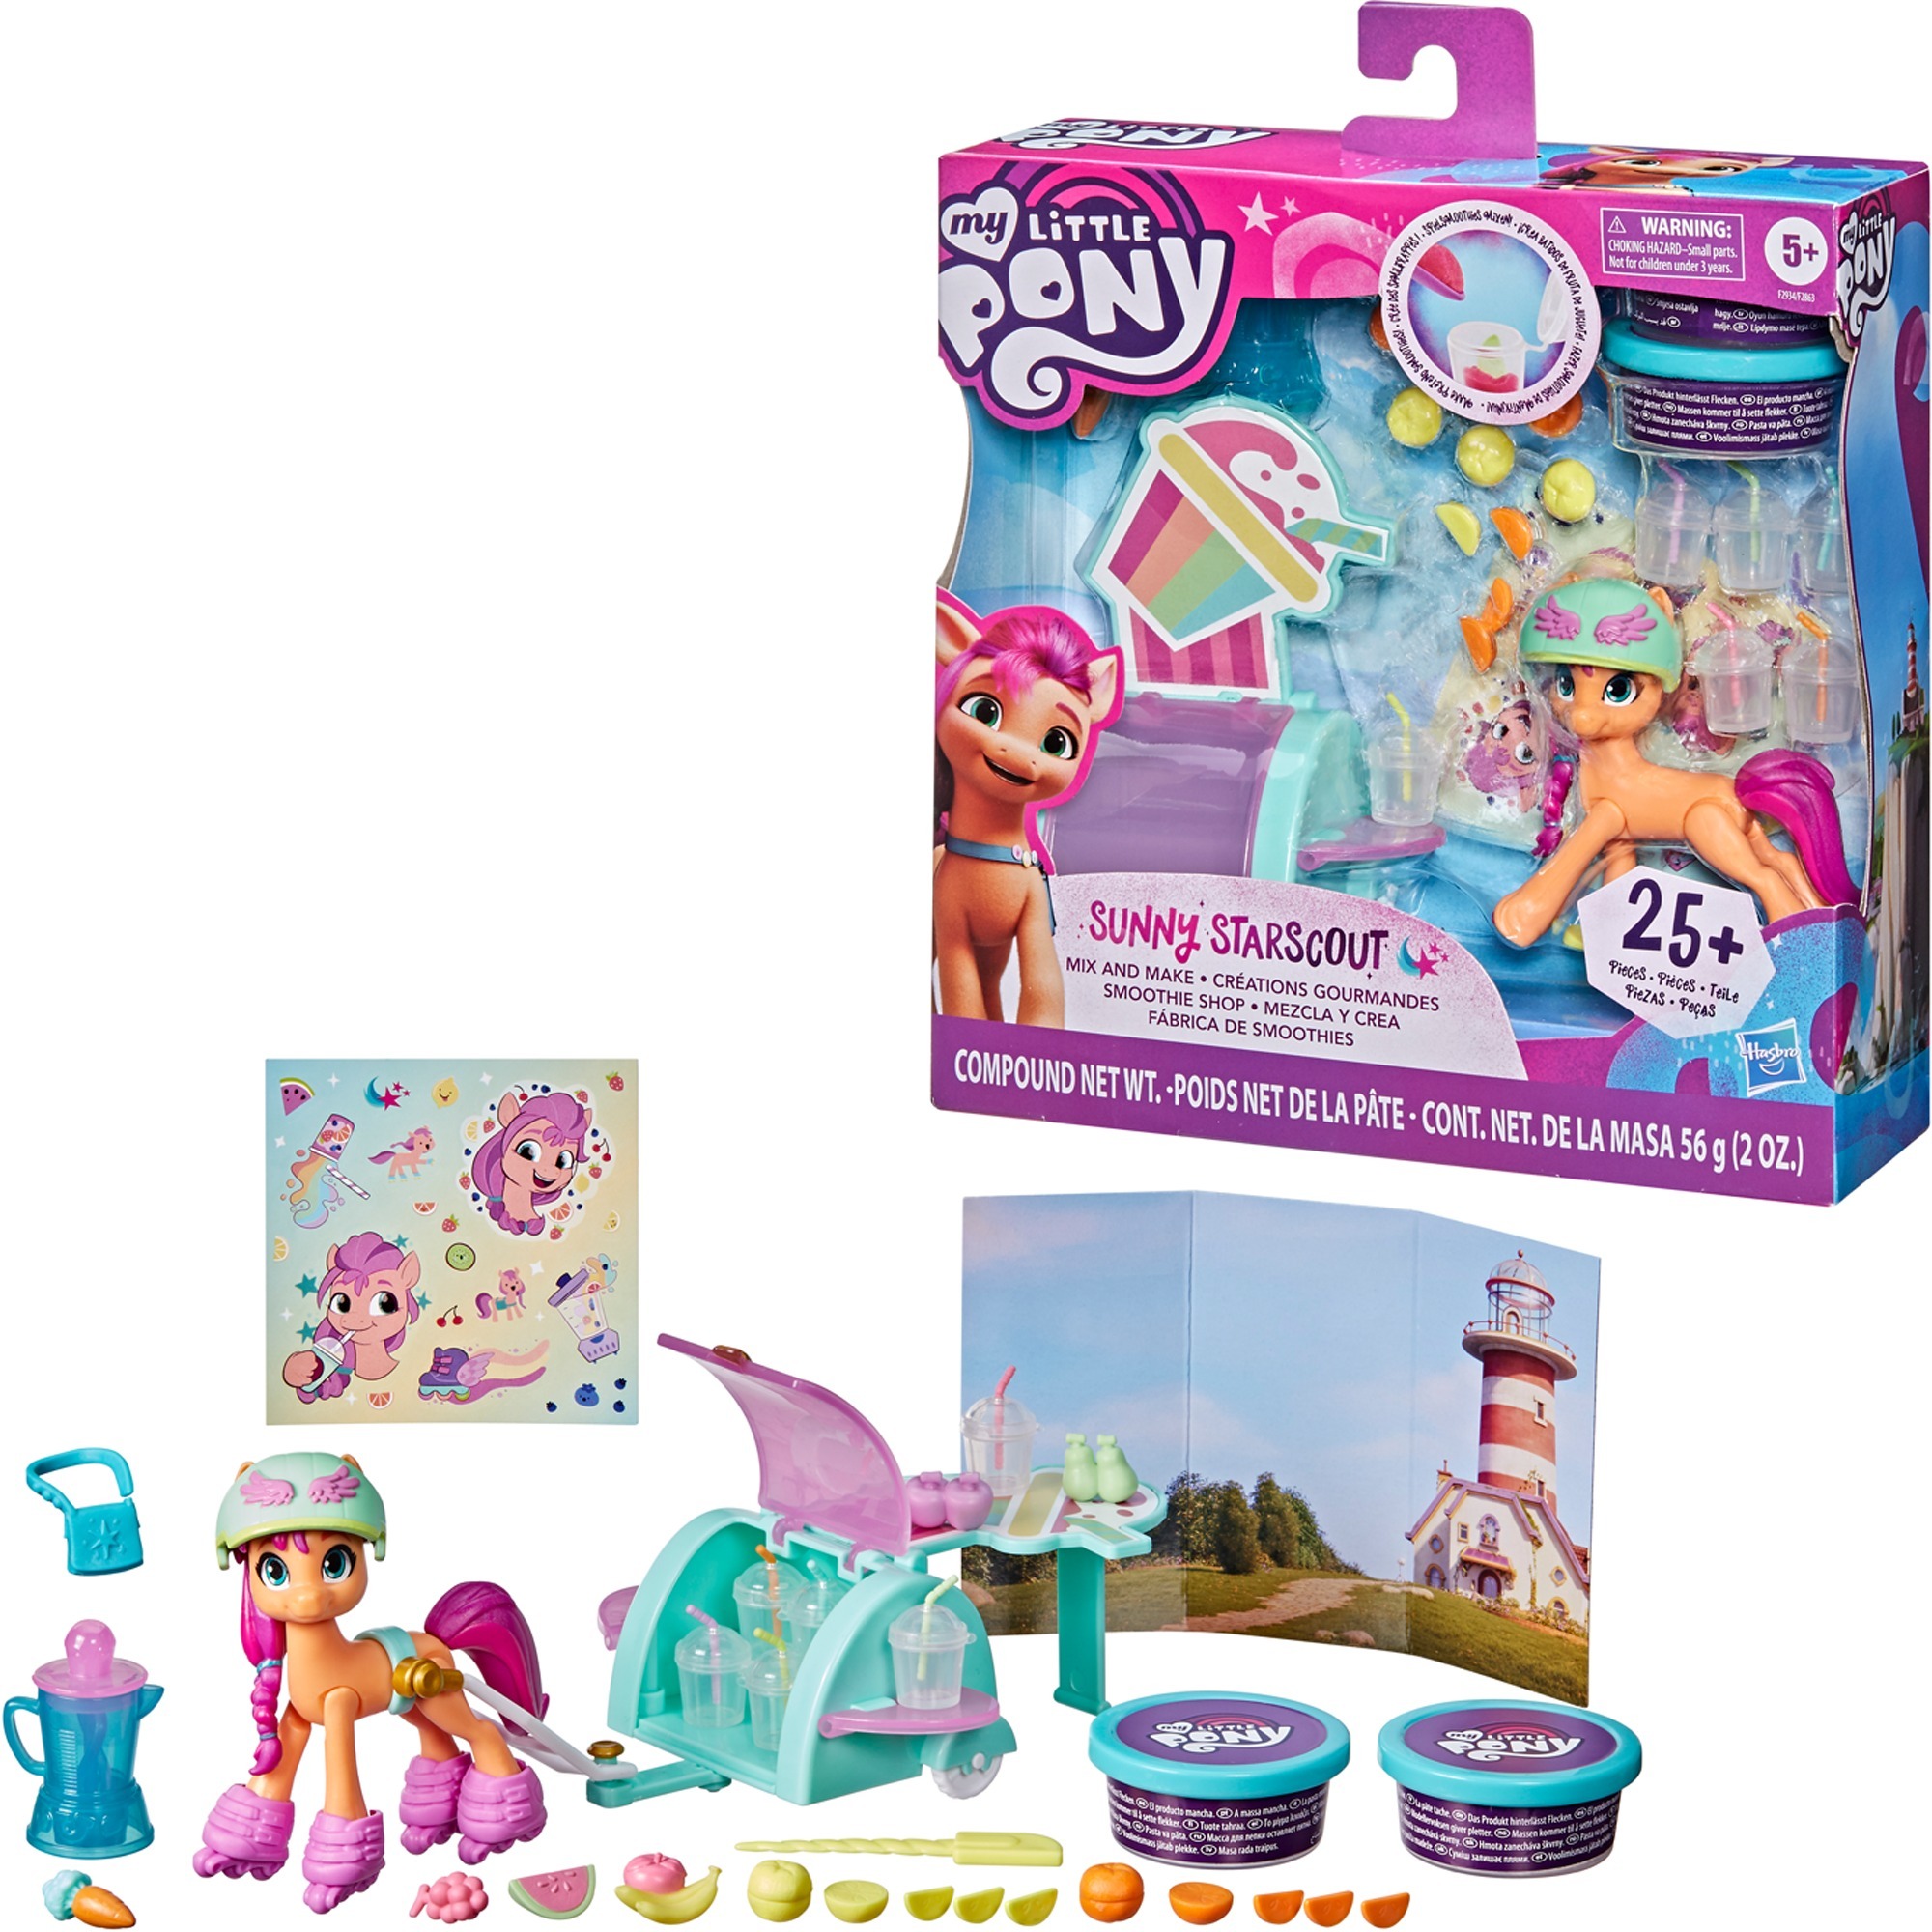 Image of Alternate - My Little Pony: Eine neue Generation Smoothie Shop Sunny Starscout, Spielfigur online einkaufen bei Alternate